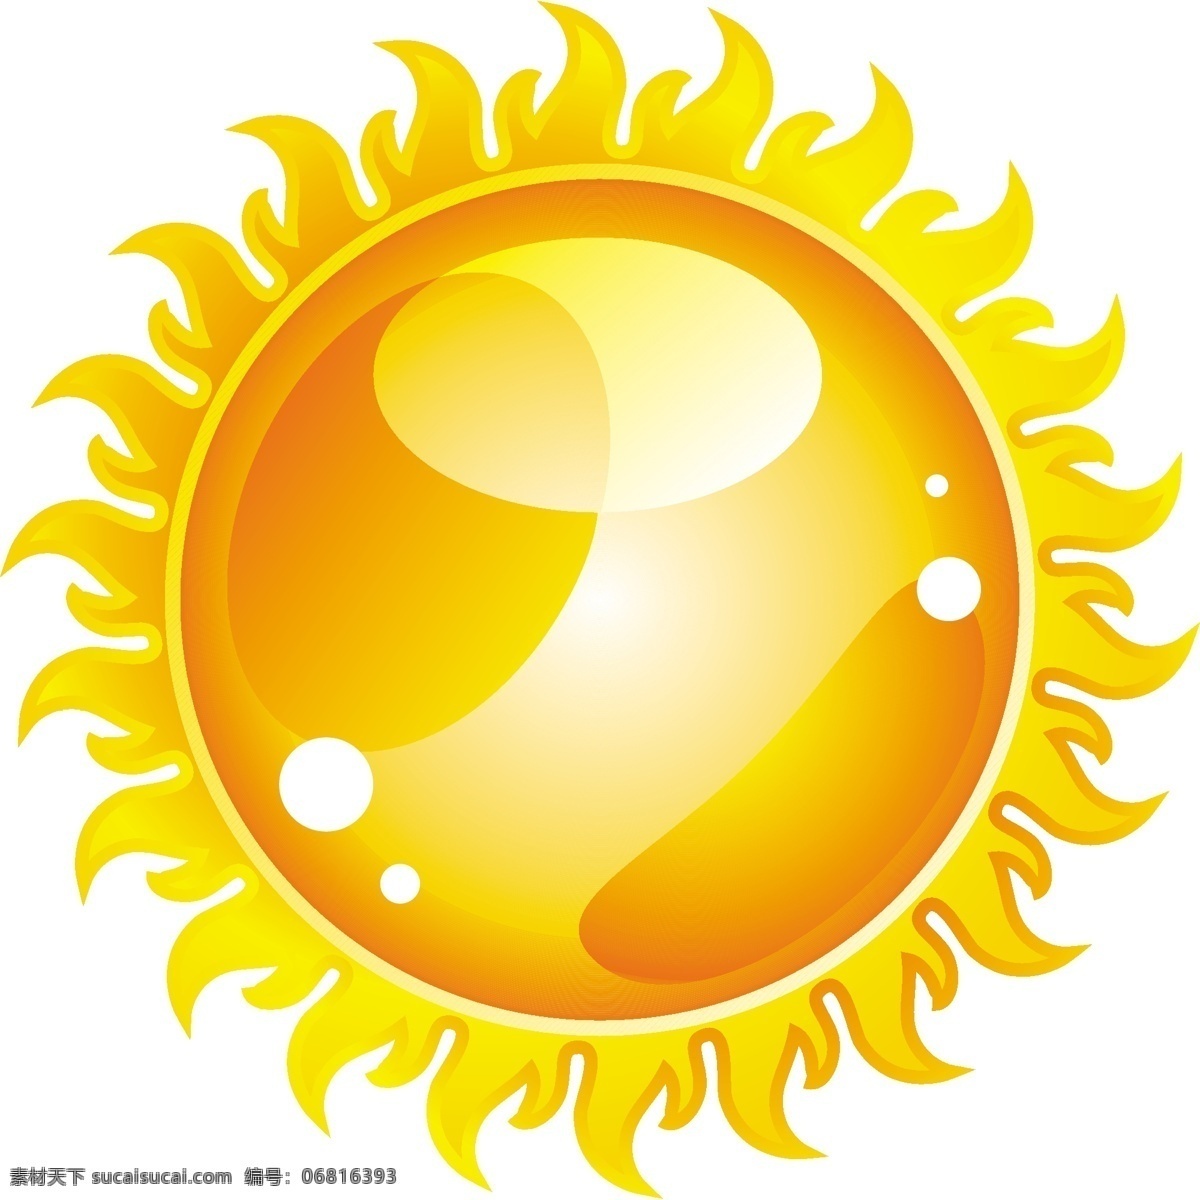 可爱的 太阳 可爱的太阳 矢量 卡通 可爱 太阳矢量背景 背景 波 太阳的太阳花 向量 矢量图 其他矢量图